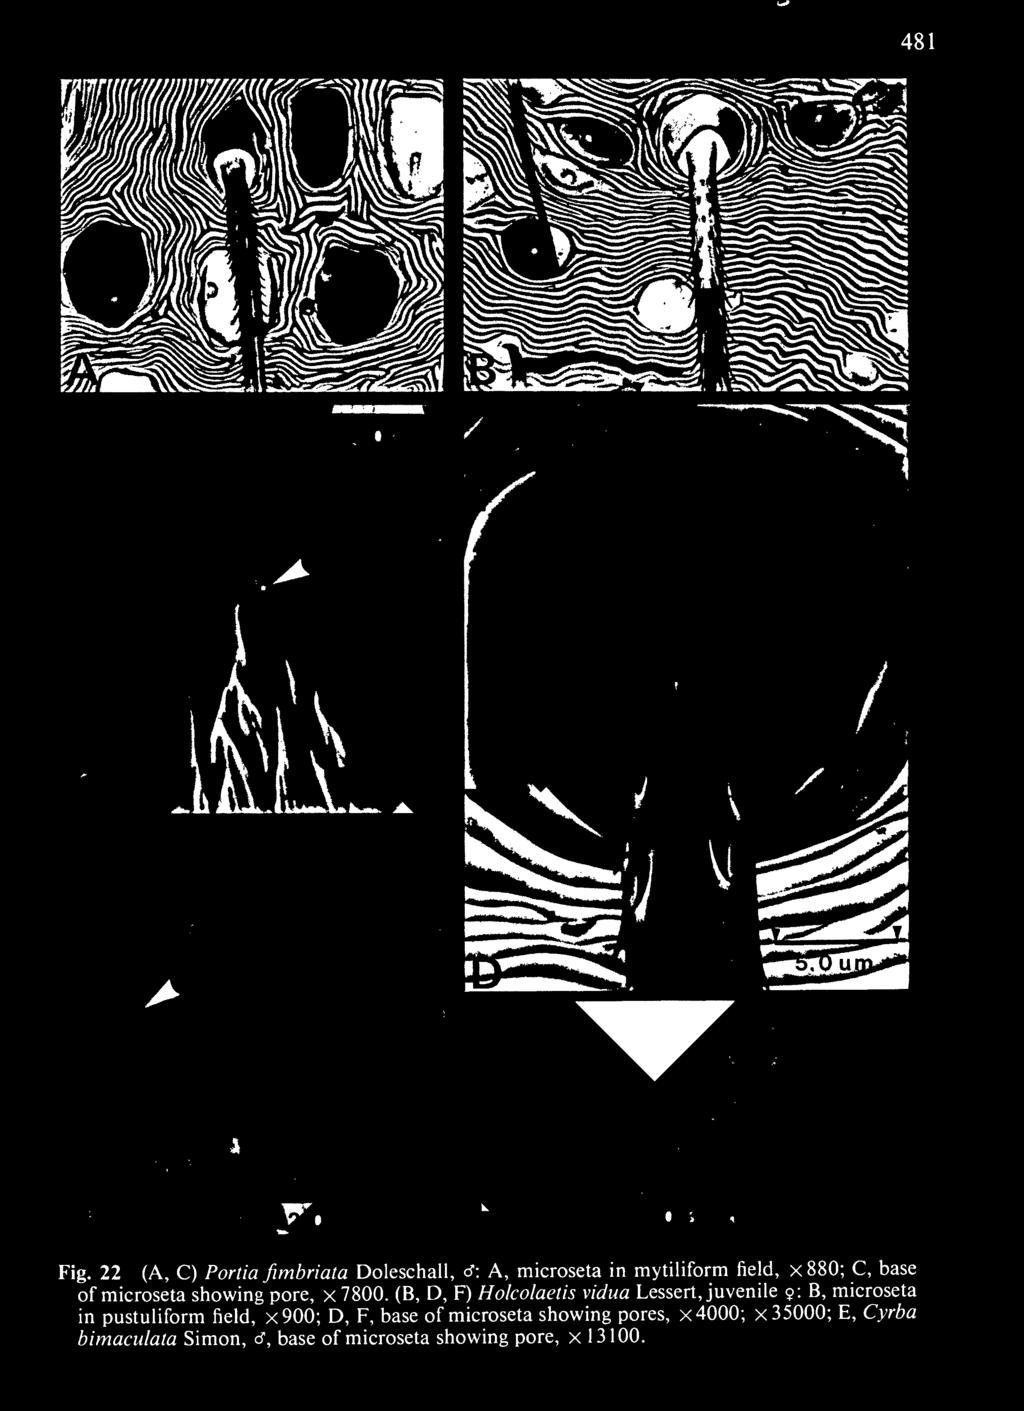 microseta in pustuliform field, x900; D, F, base of